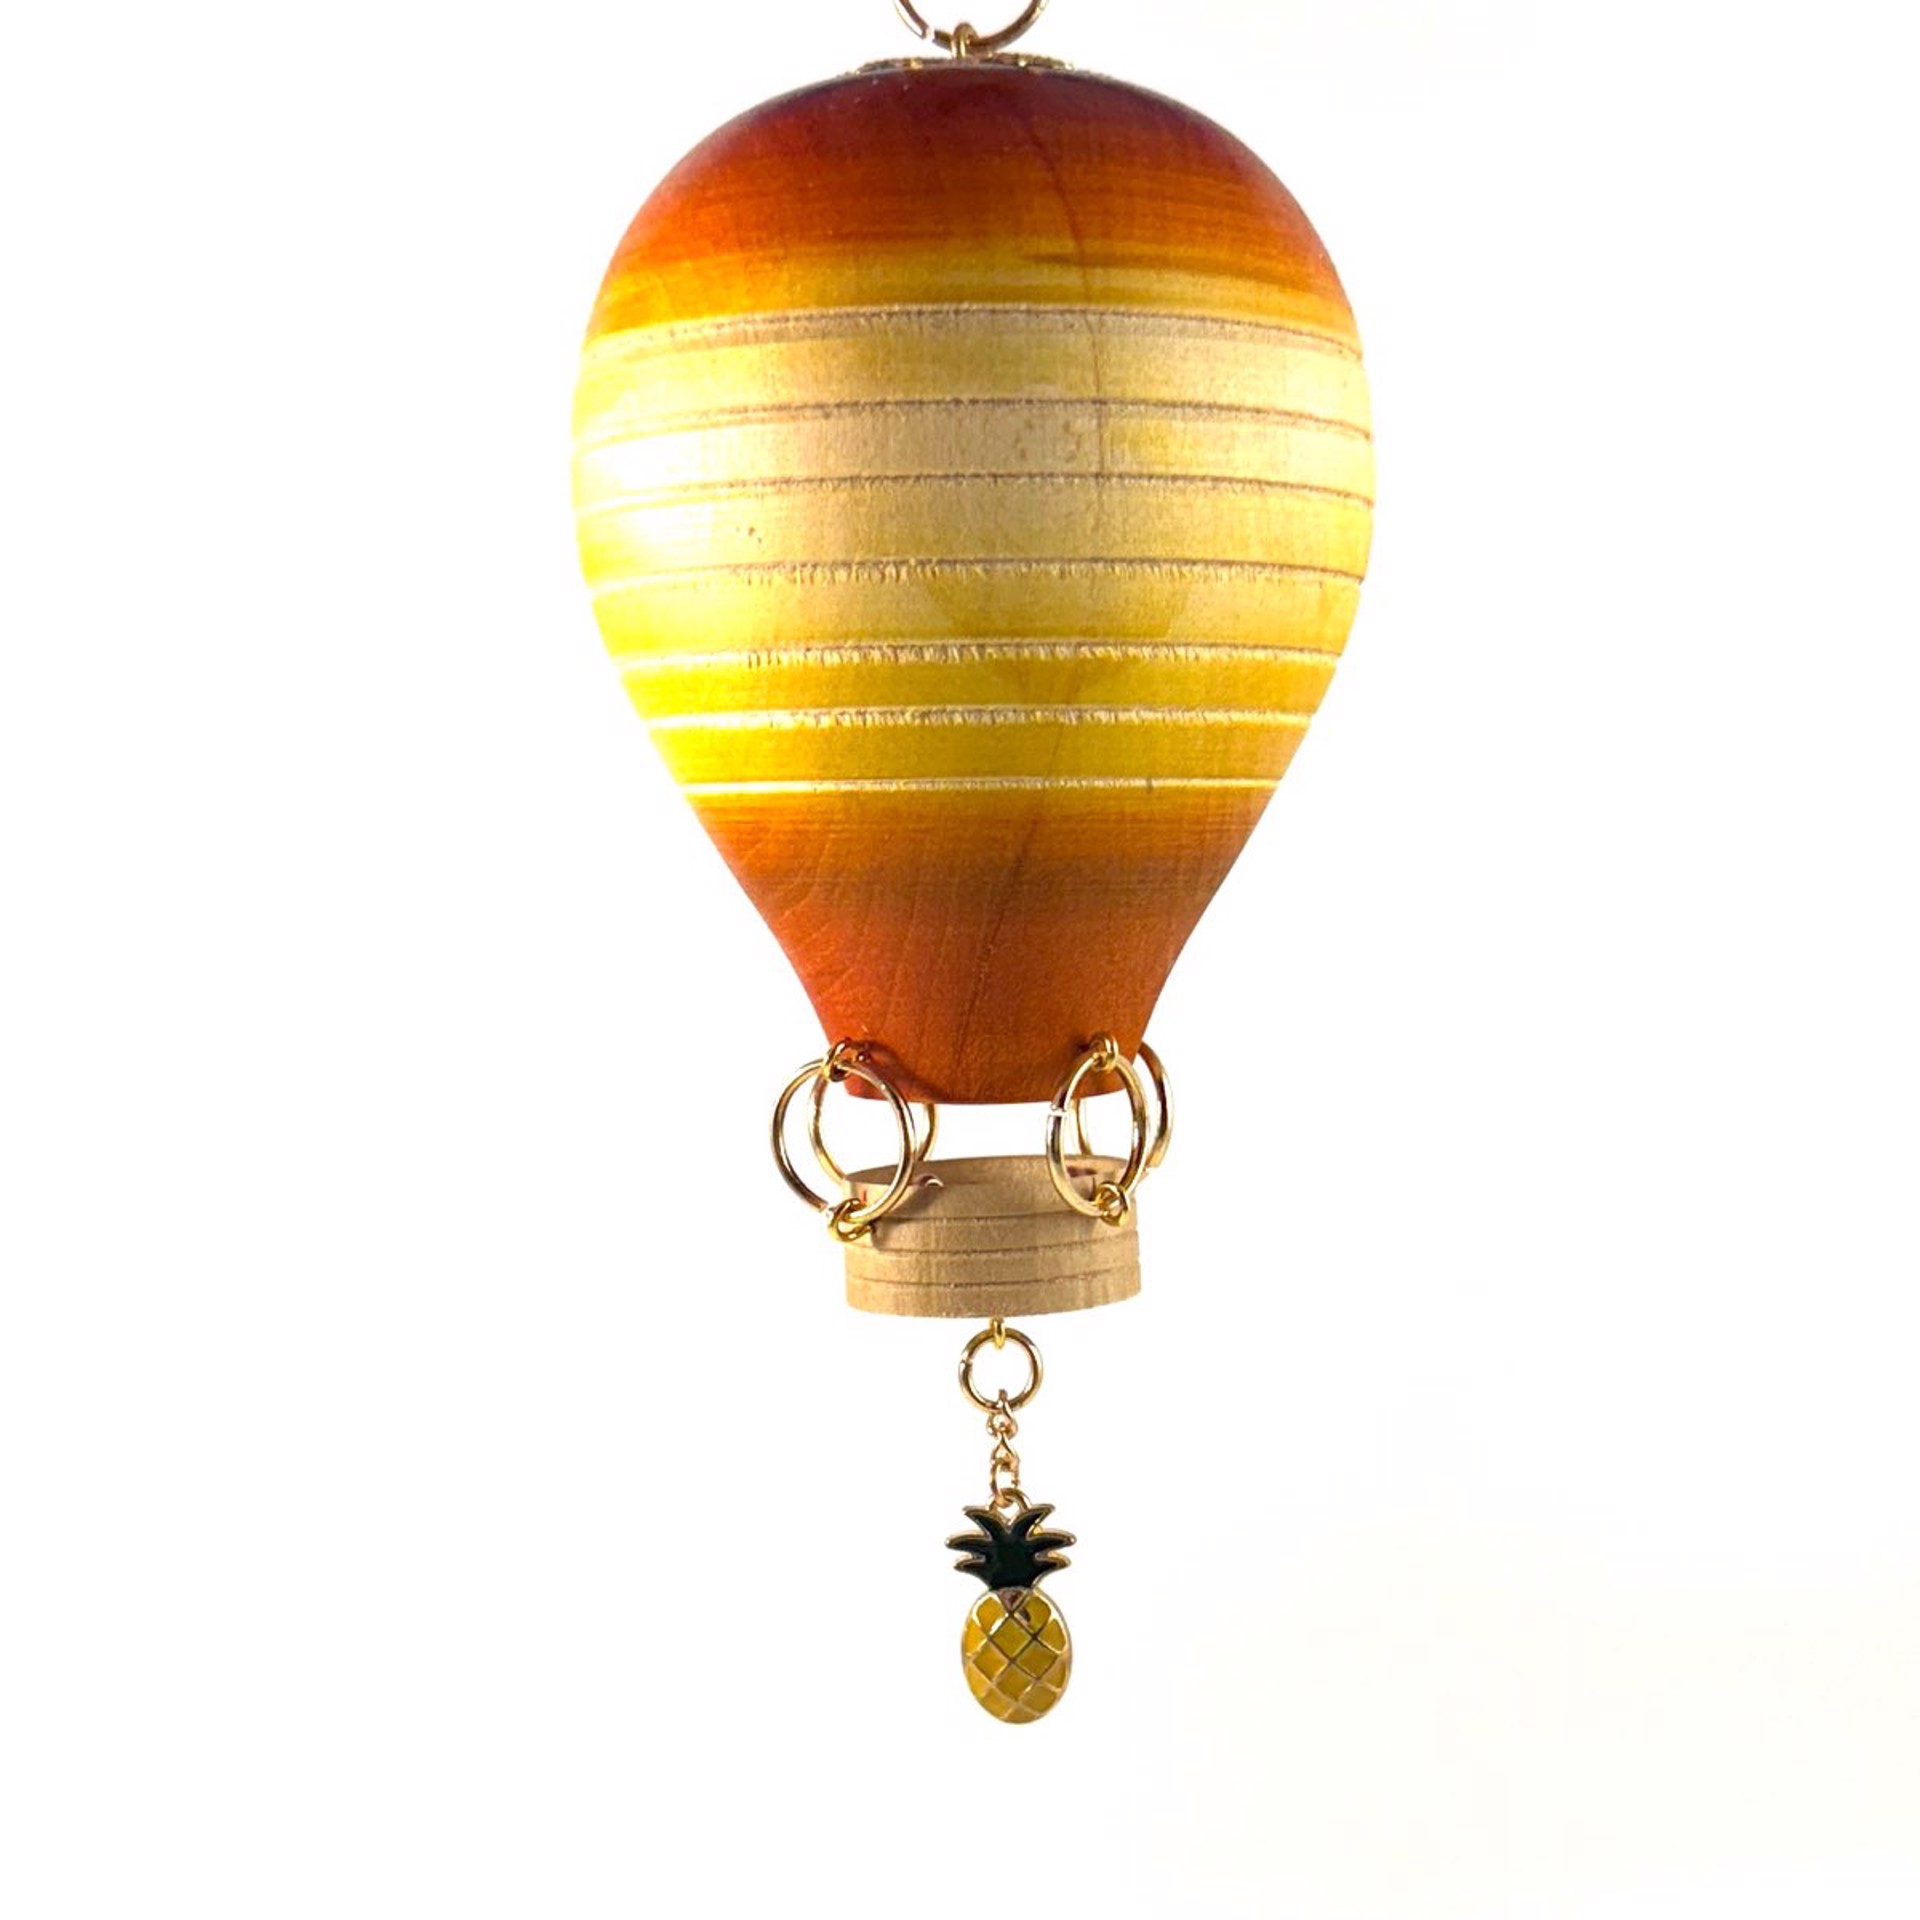 Whimsical Hot Air Balloon Ornament MT23-15 by Marc Tannenbaum